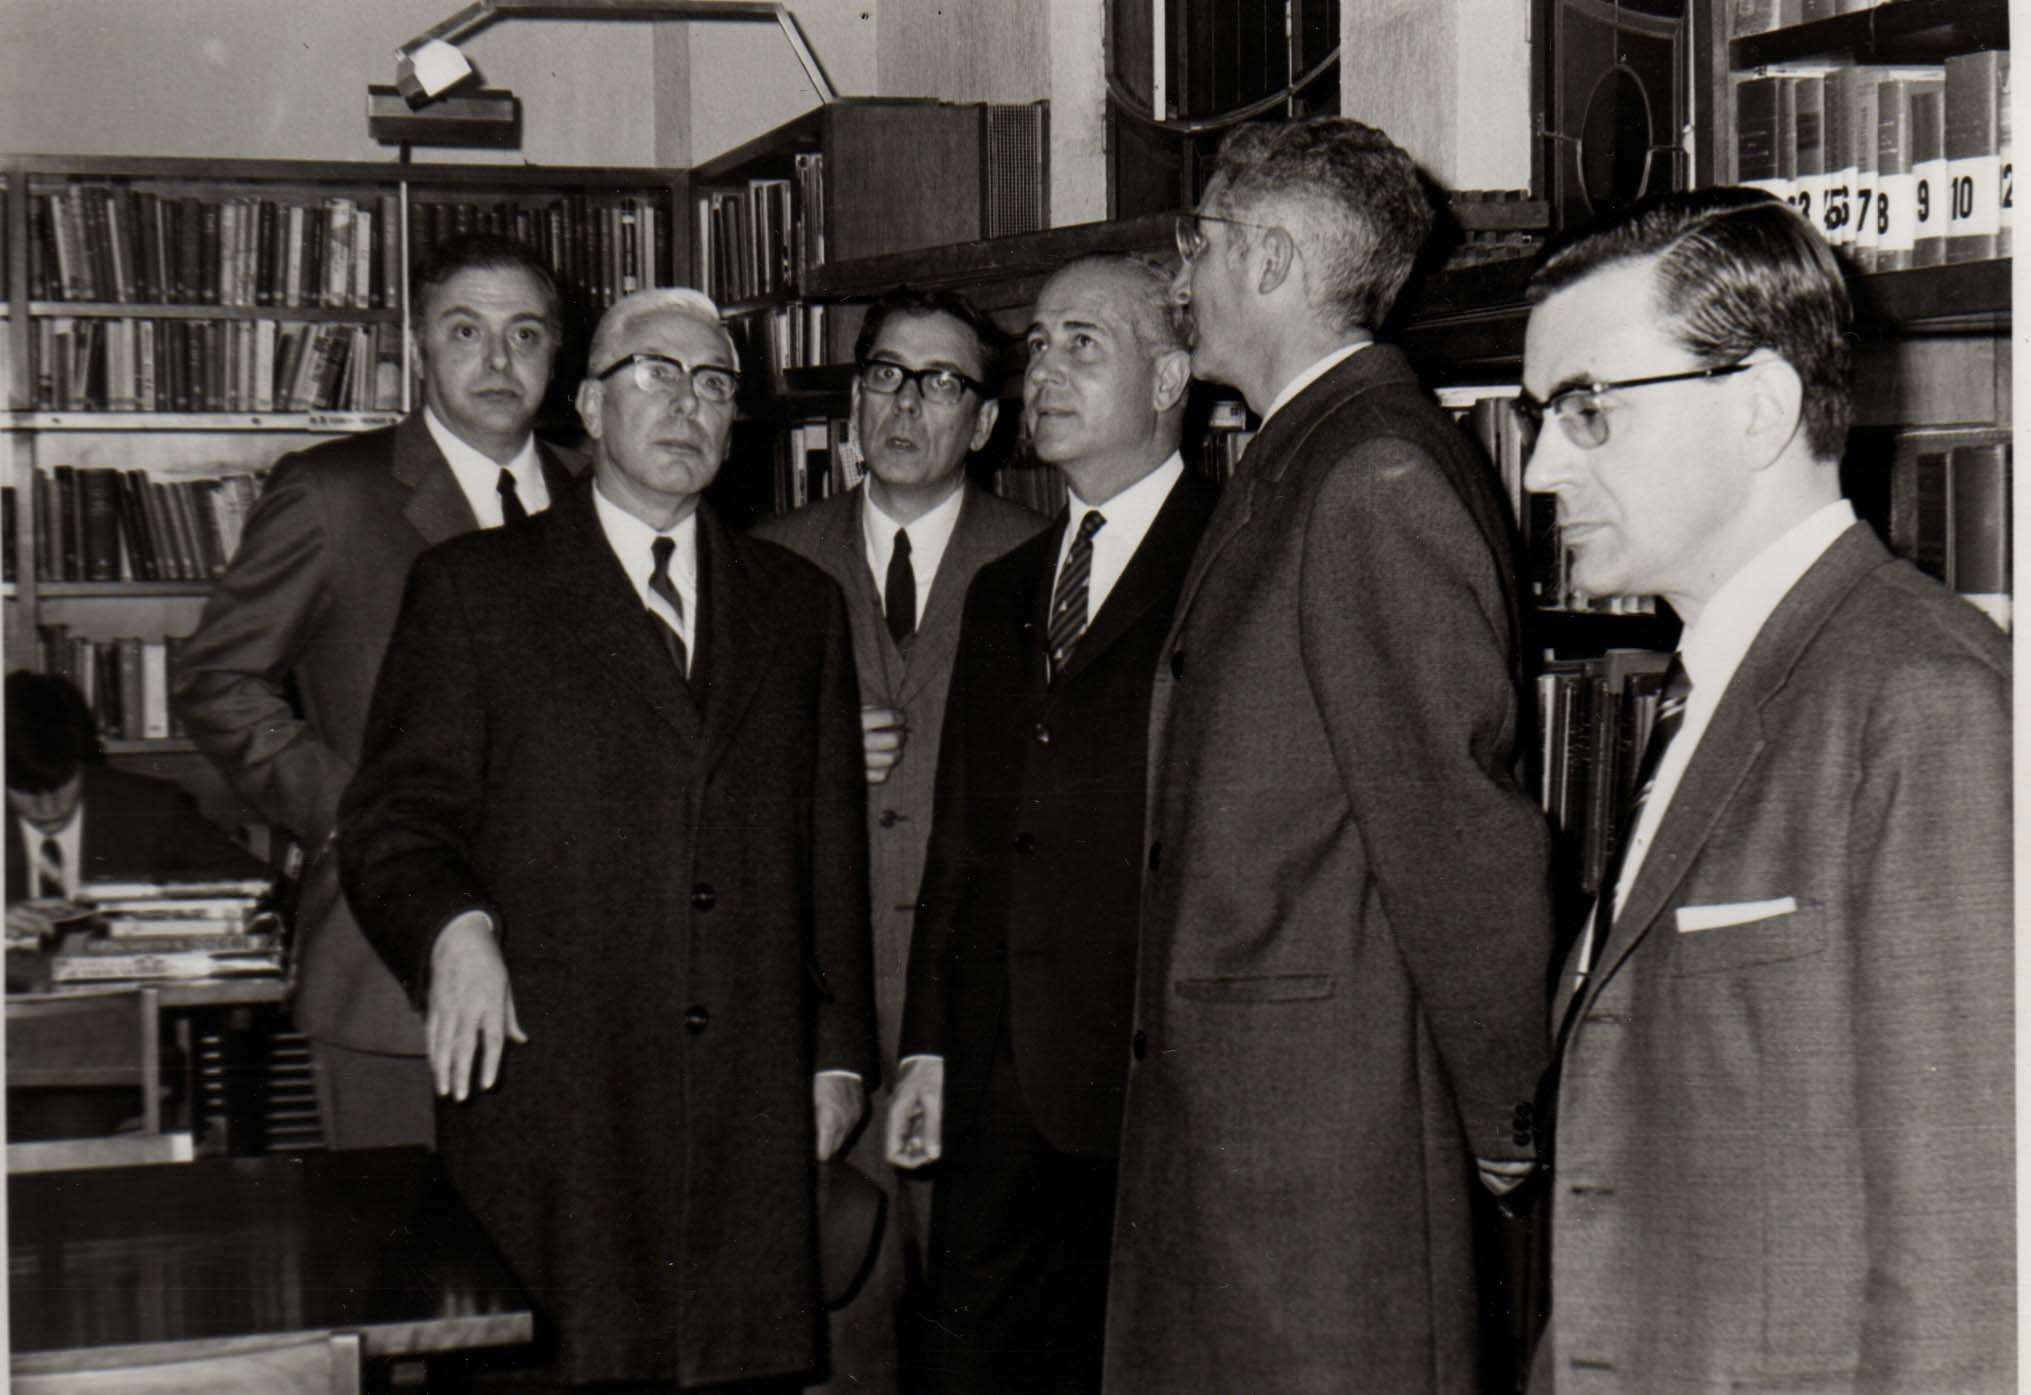 Conferència i visita de Josep Maria Muller i d'Abadal. Data: 4 de Març de 1968. Fotografia: Pere Farrán